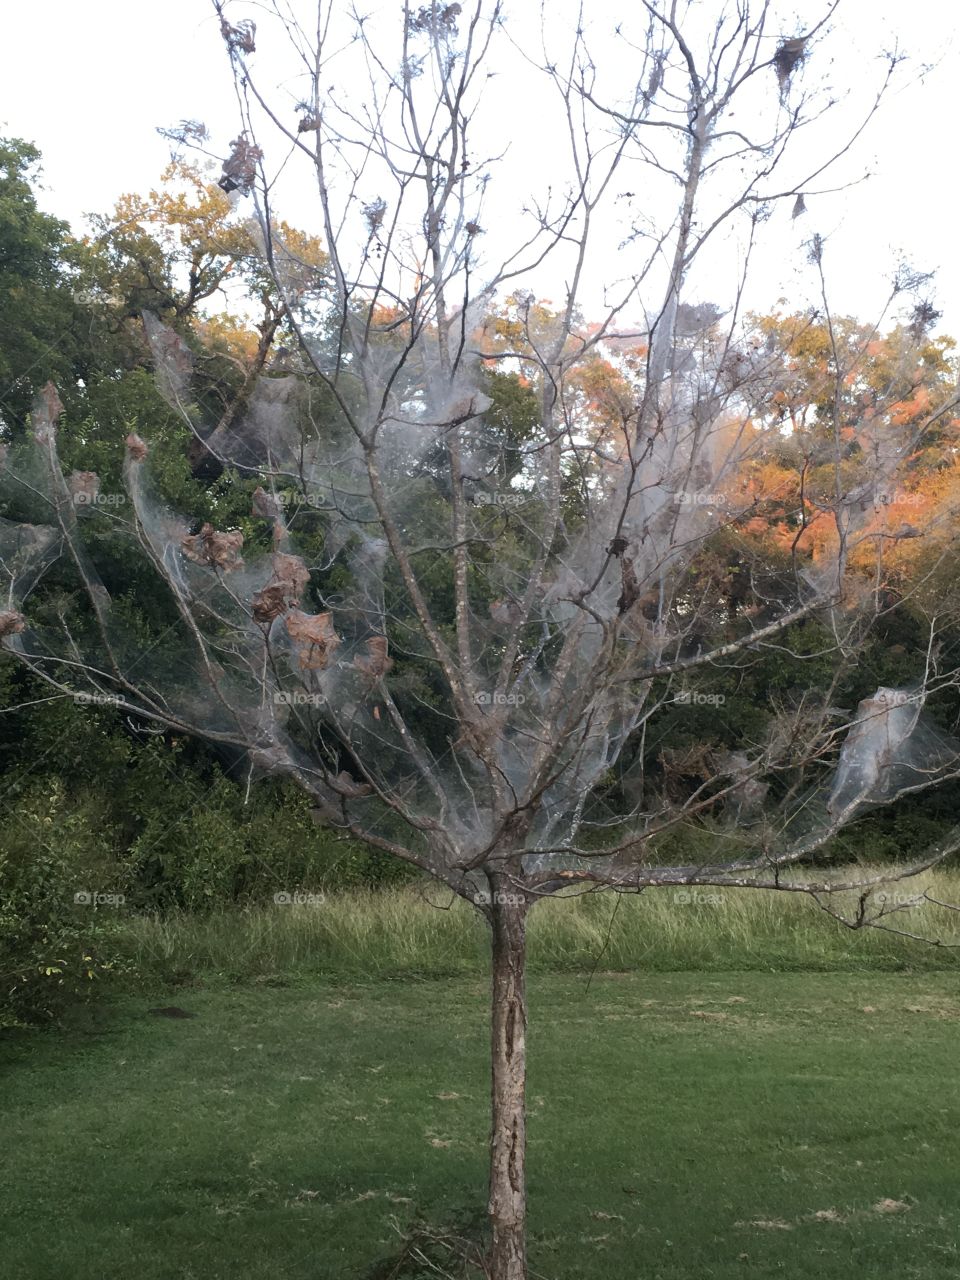 A spooky silken ghost tree!